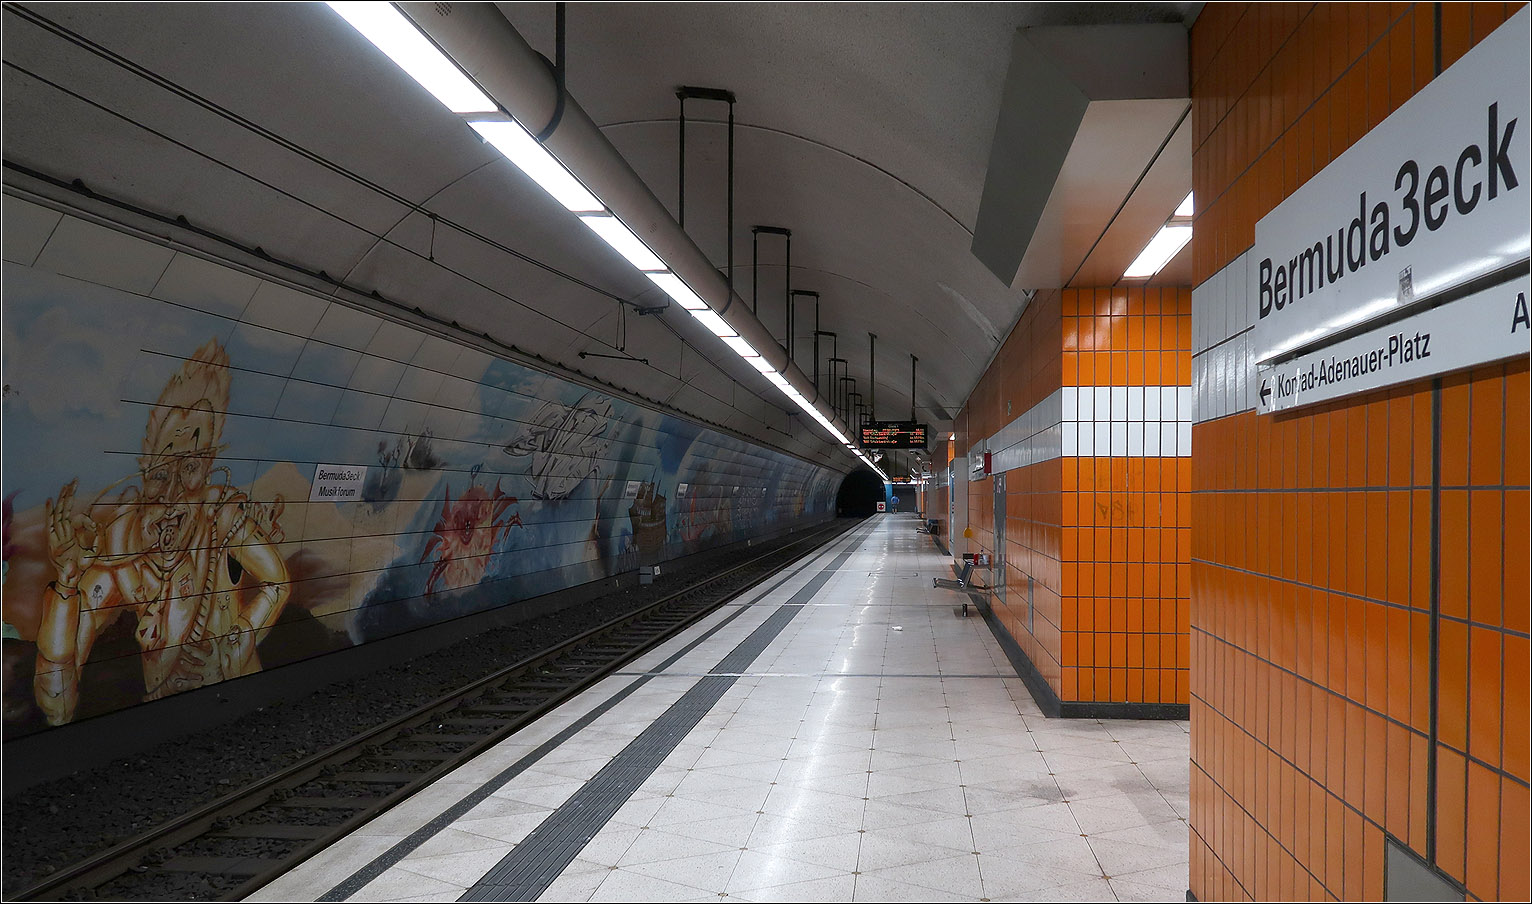 Die erste Tunnelachse in Bochum - 

Die Haltestelle Bermuda3eck/Musikforum ist die erste unterirdisch gebaute U-Station im Bereich der Stadtbahn Rhein/Ruhr. Insgesamt gibt es heute 32 unterirdisch erstellte Stationen im Bereich der Stadtbahn Rhein-Ruhr.